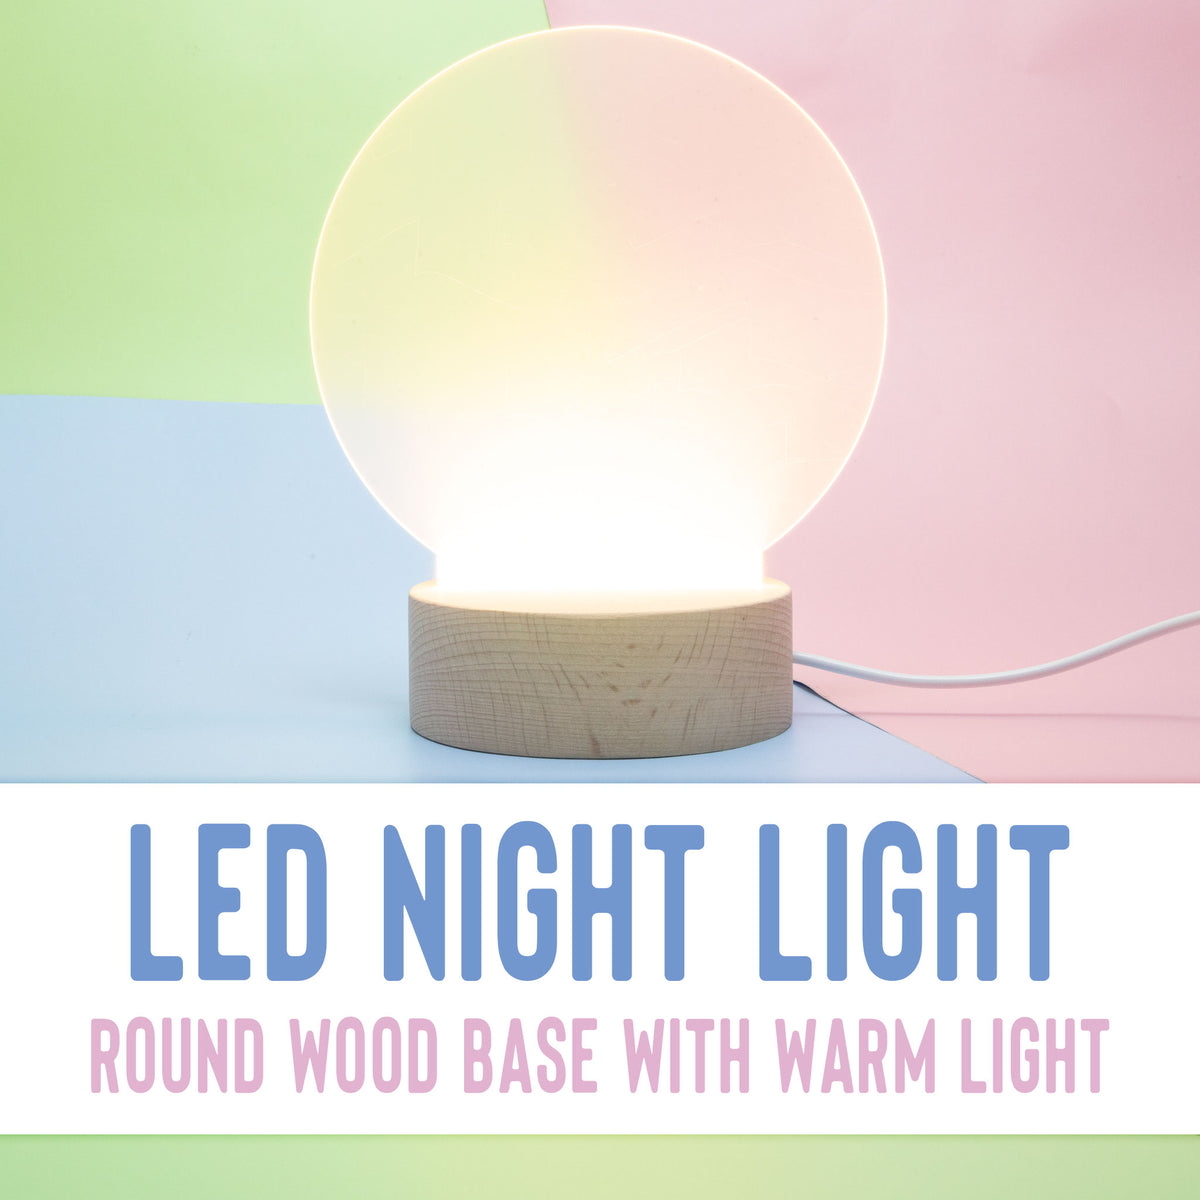 LED Night Light - Round Wood Base Warm Light